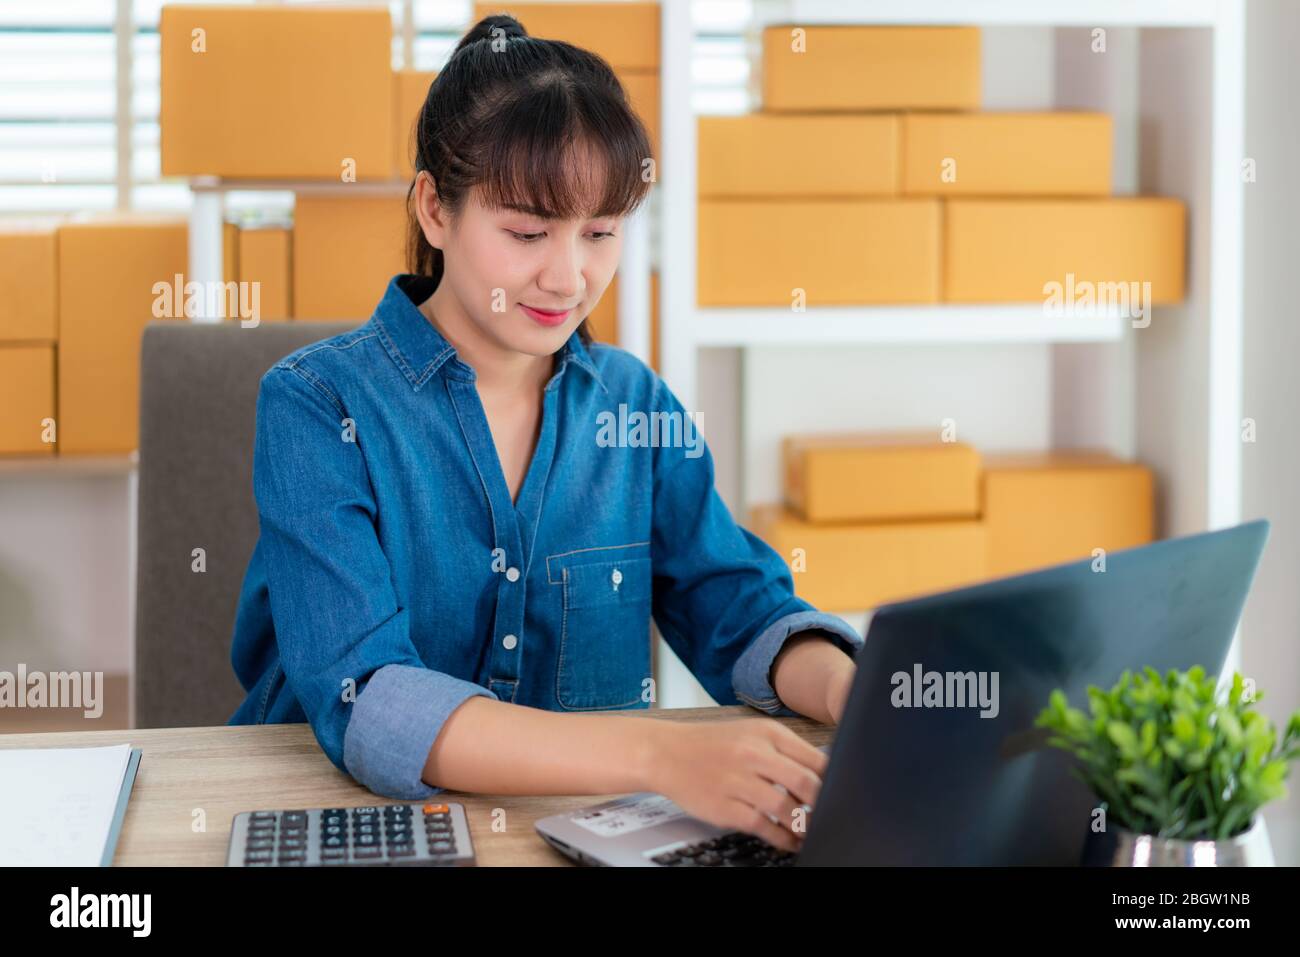 Asia propietario de la mujer de negocios trabajar en casa para las compras en línea, chat con el cliente su portátil con equipo de oficina, el estilo de vida empresarial Foto de stock